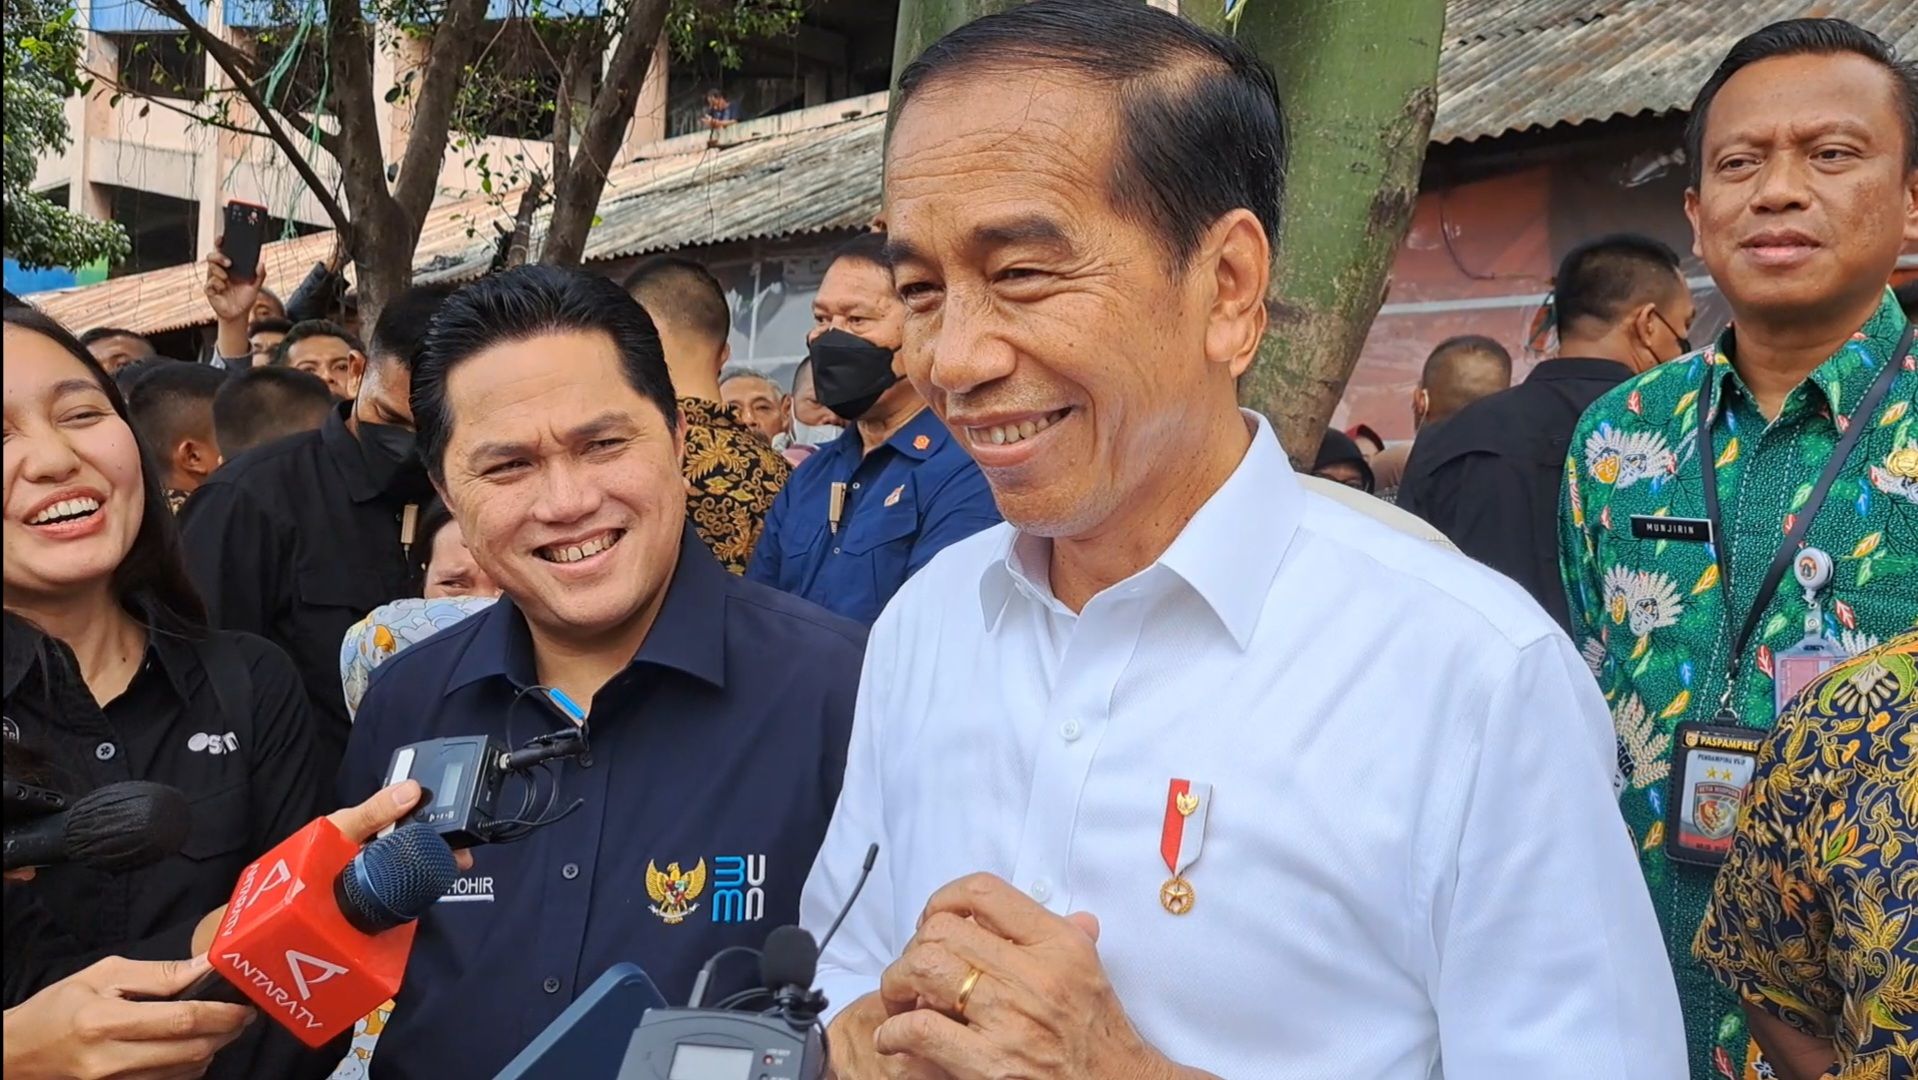 Senyum Jokowi Saat Ditanya Momen Kebersamaannya dengan Ganjar